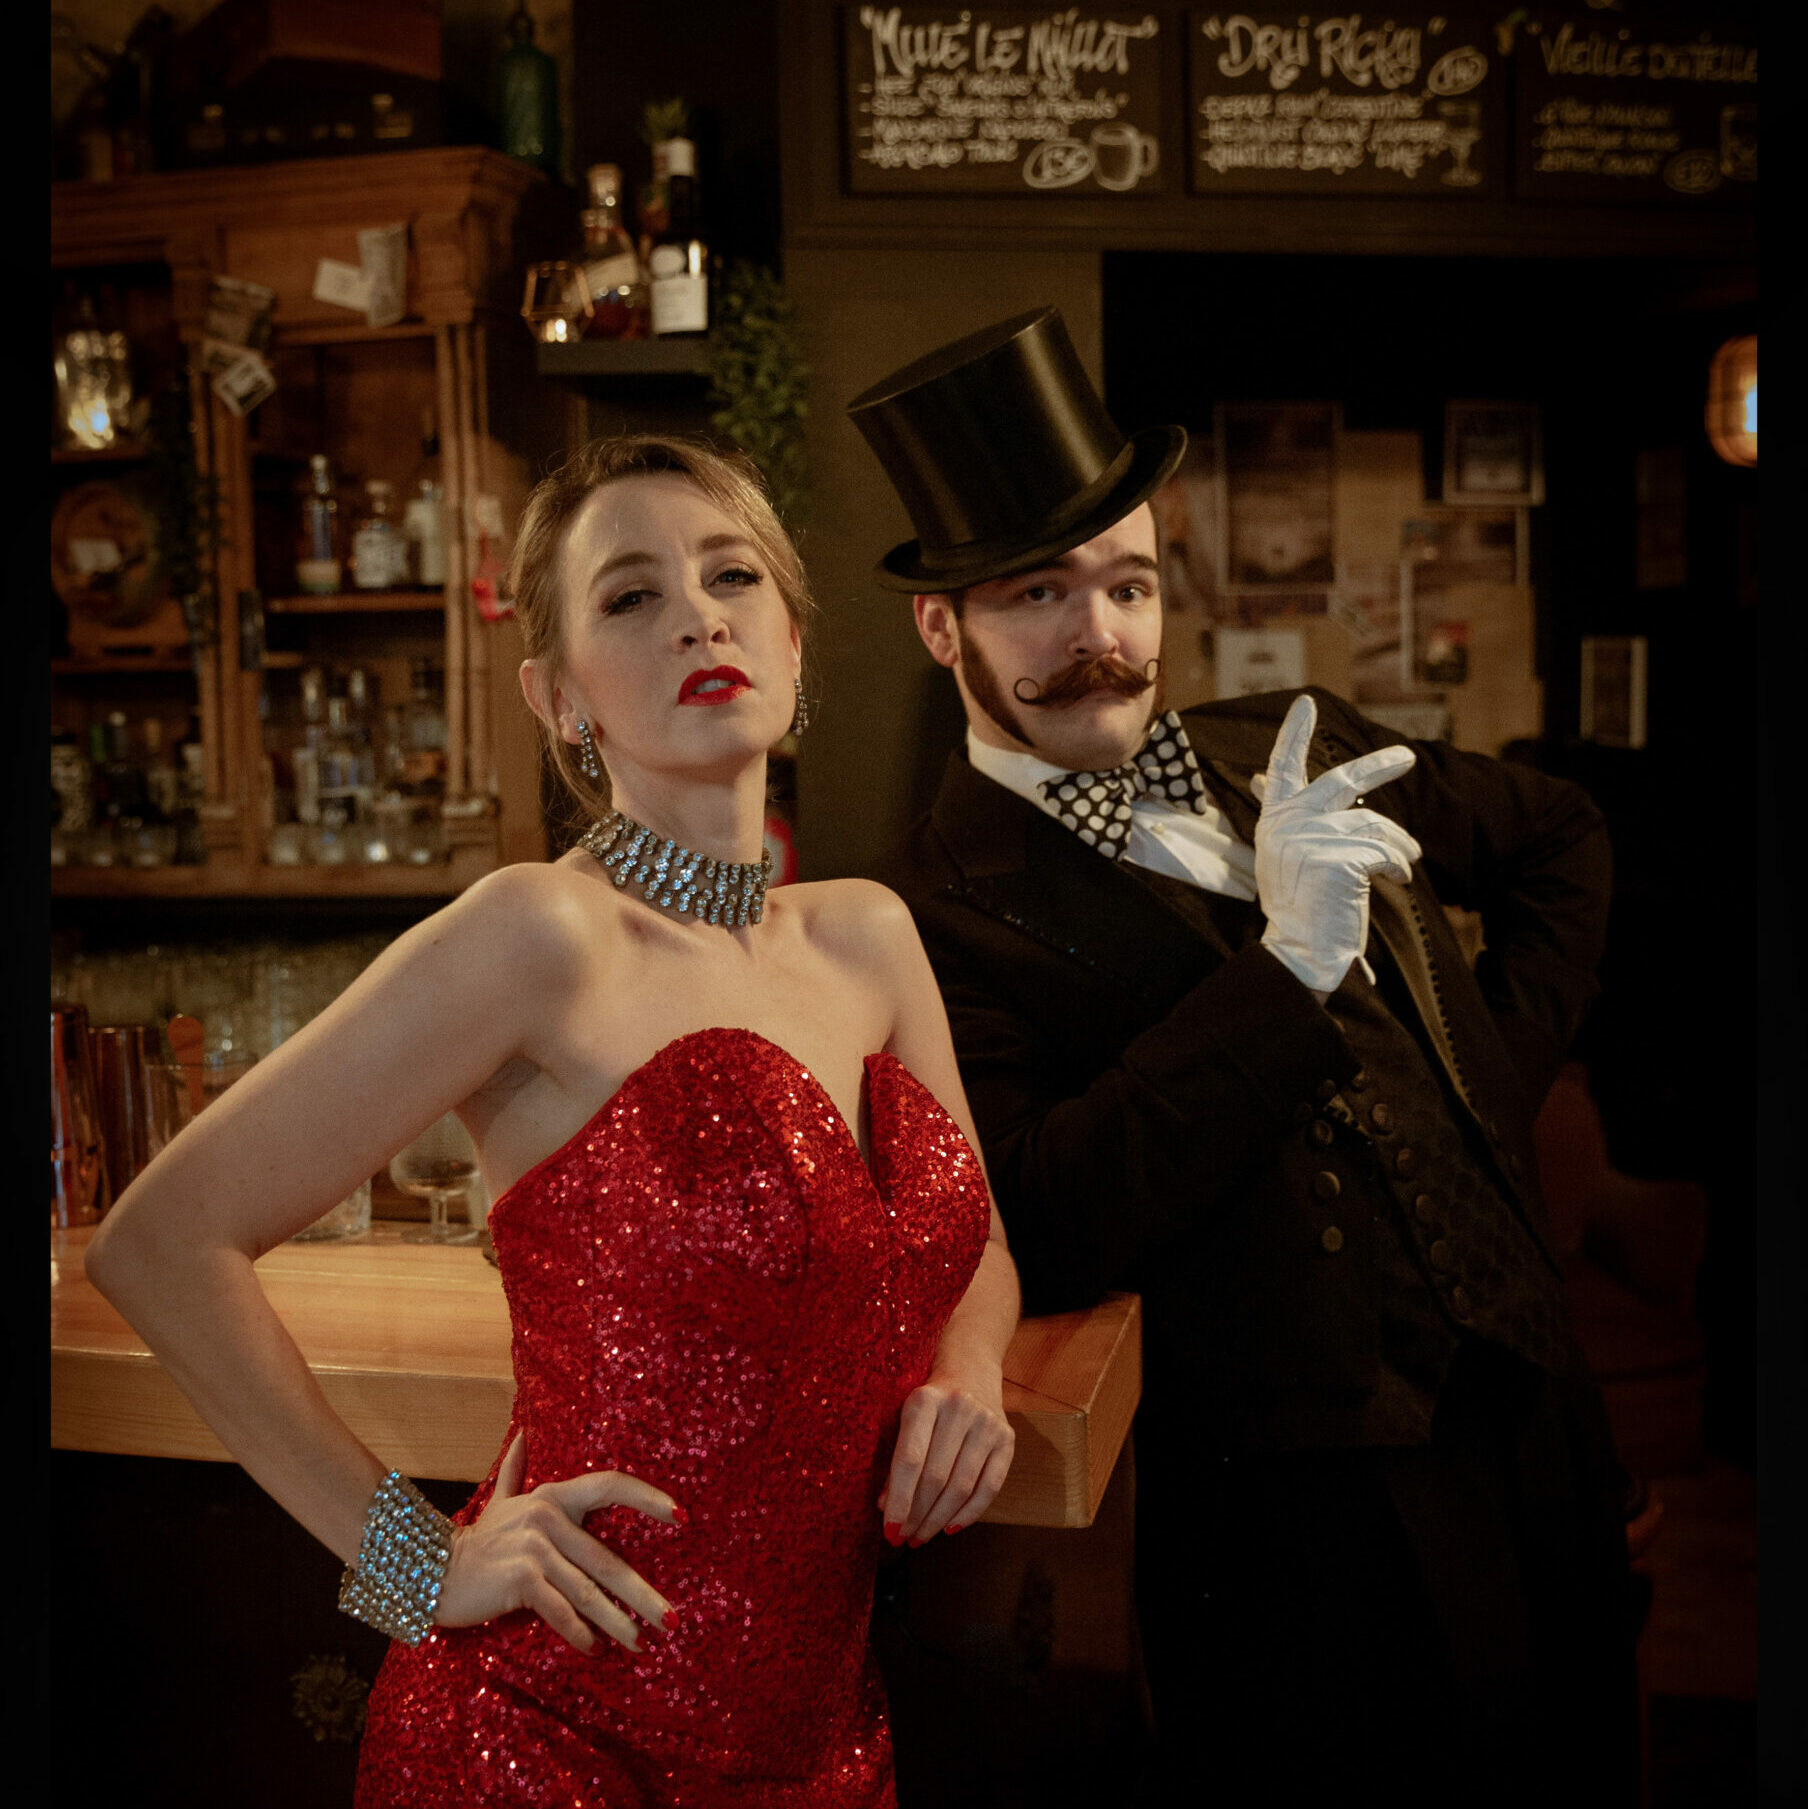 Affiche du spectacle Boudoir Burlesque par Betty Crispy et Russell Bruner. On voit les deux artistes devant un bar. Betty Crispy porte une robe rouge pleine de paillette. Russell Bruner quant à lui porte un chapeau haut de forme, un costard noir et un noeud papillon.